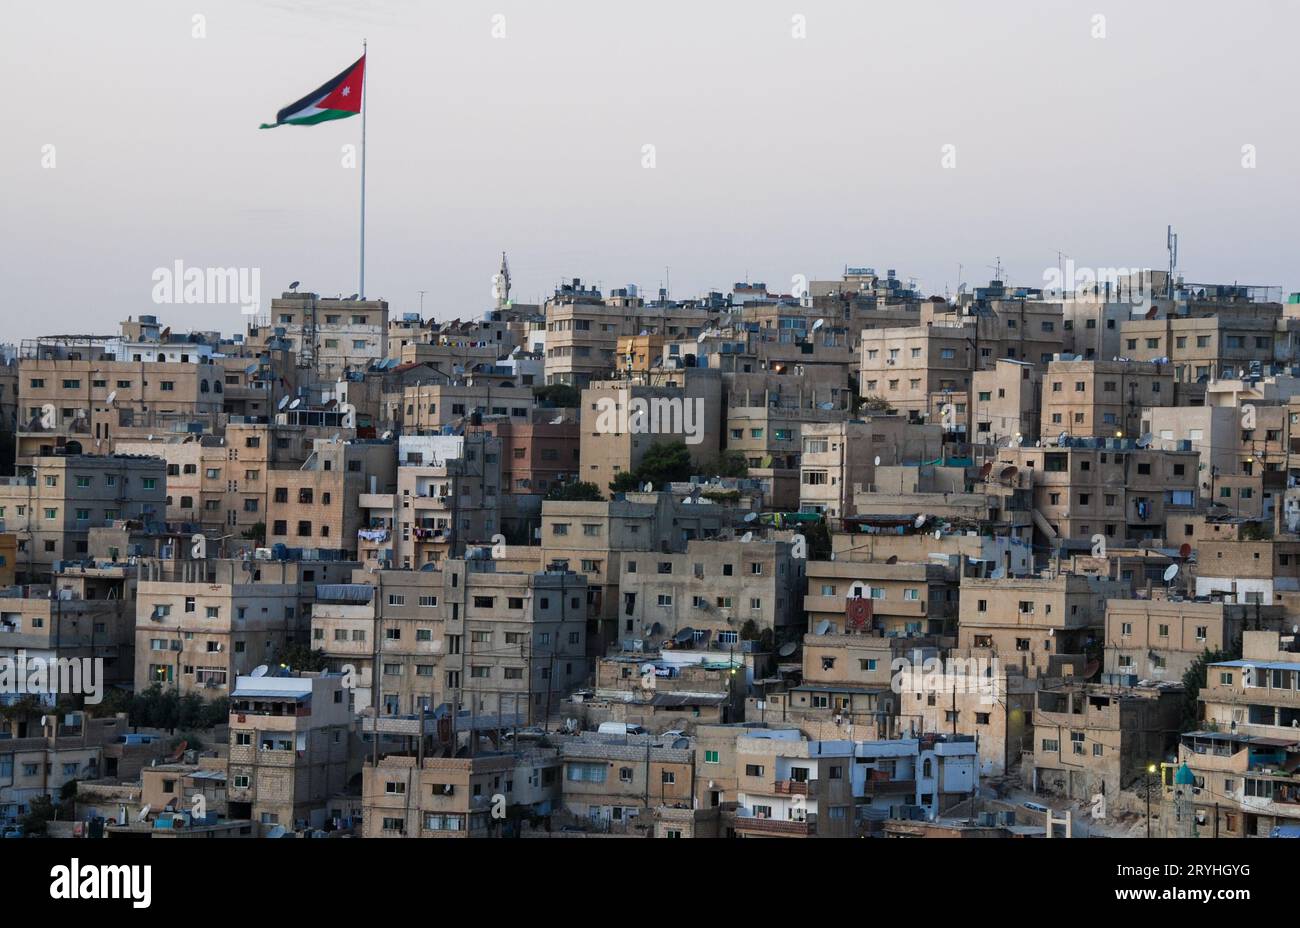 Le paysage urbain de la capitale d'Amman, la Jordanie Asie, la nuit Banque D'Images